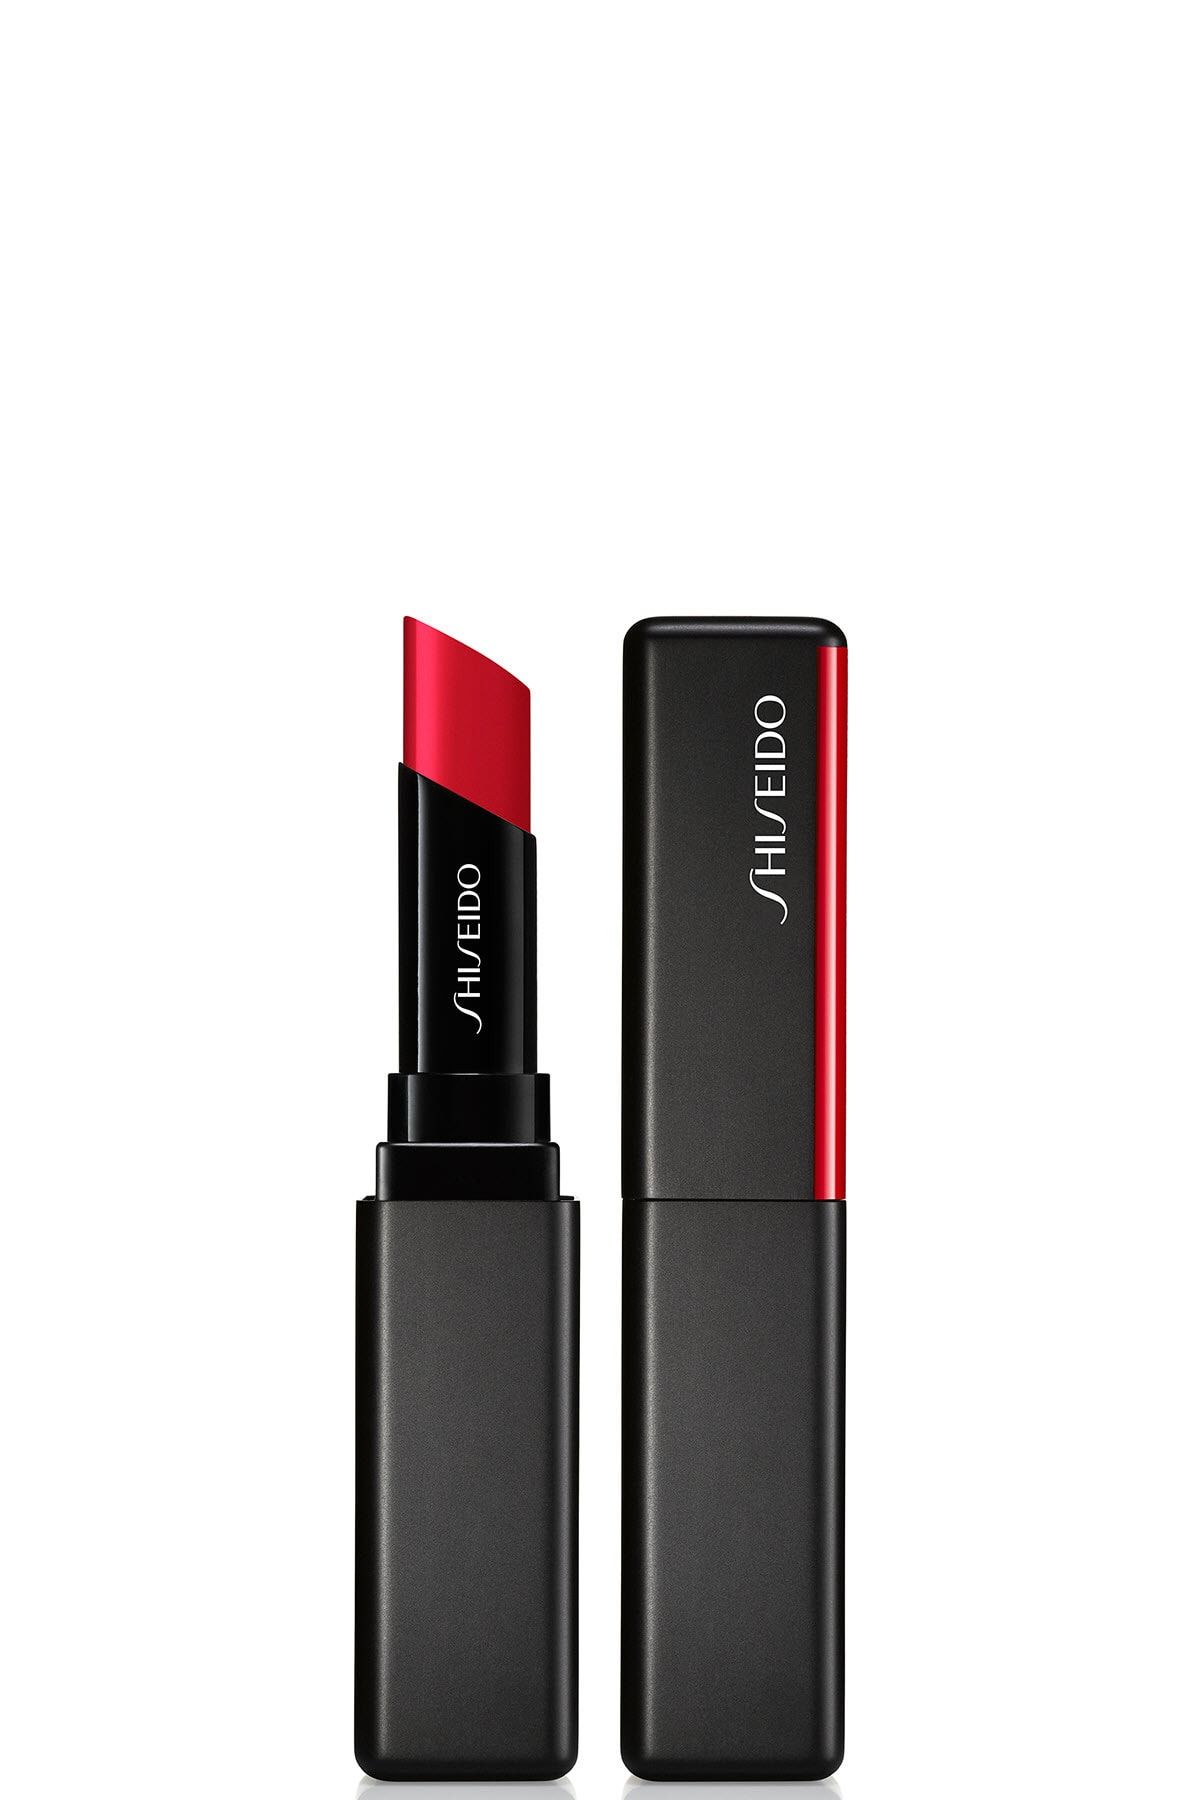 Shiseido Kalıcı Nemlendirici Ruj - SMK Visionairy Gel Lipstick 221 729238151987